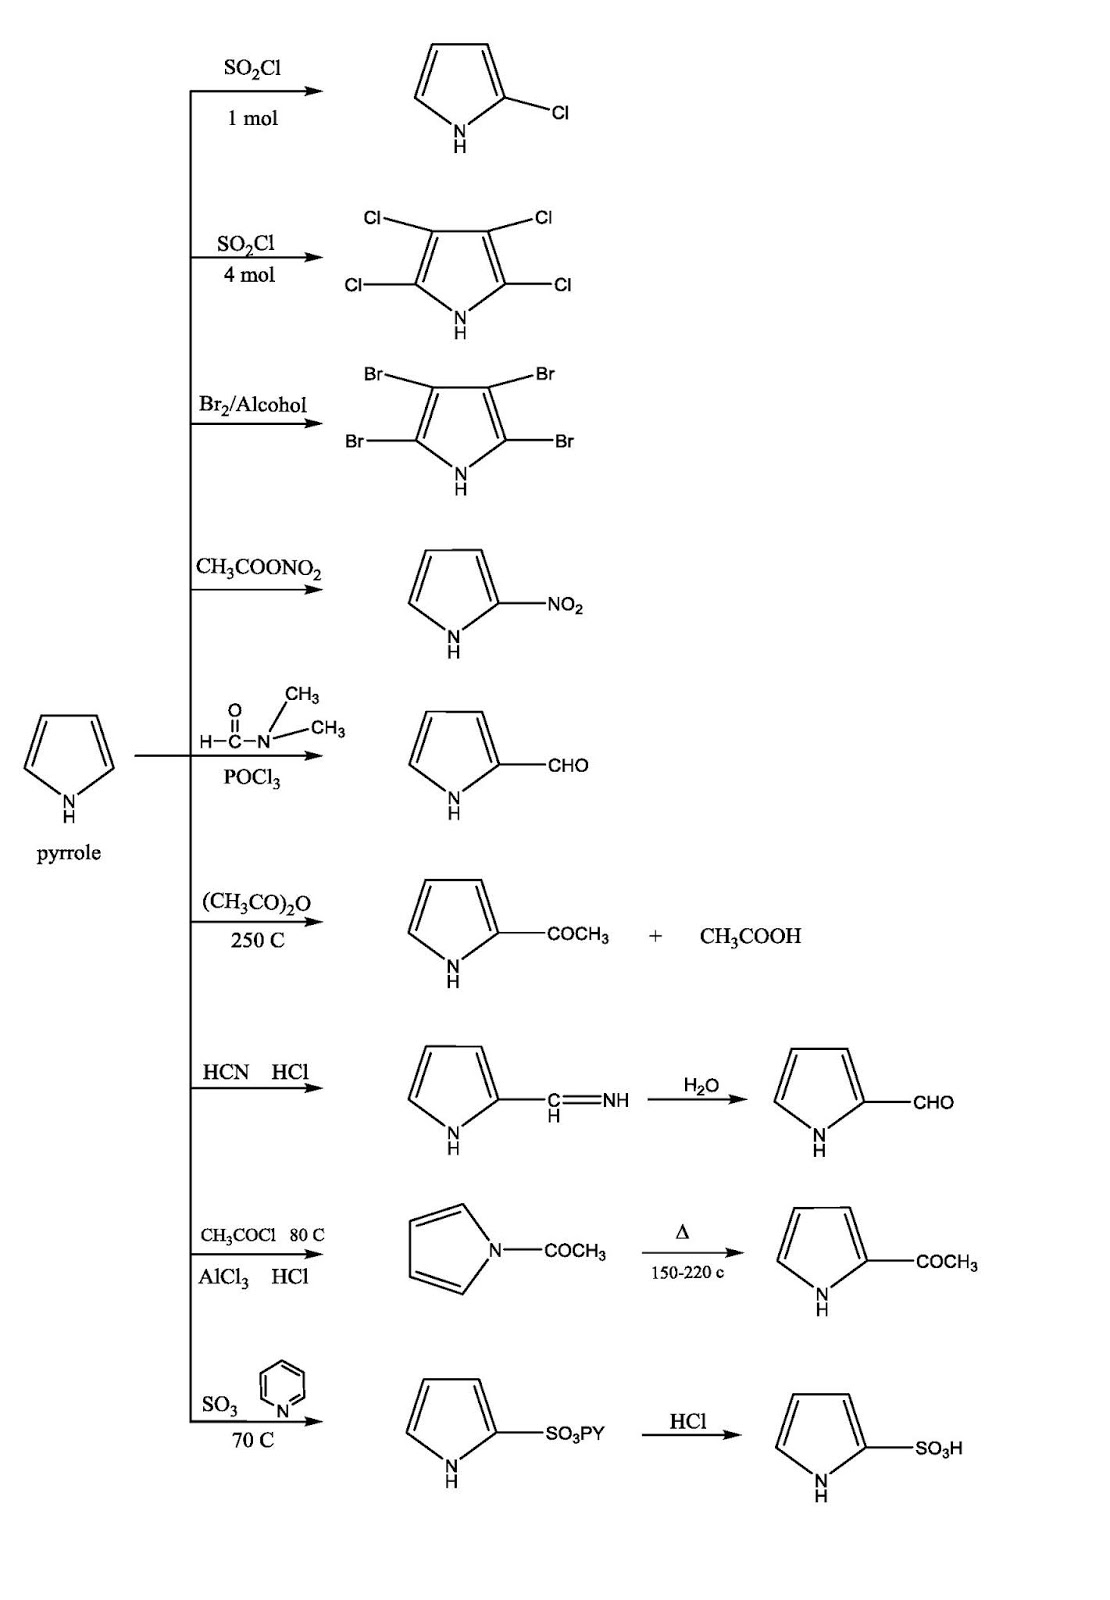 أمثلة على تفاعلات الأستبدال الألكتروفيلي للبيرول